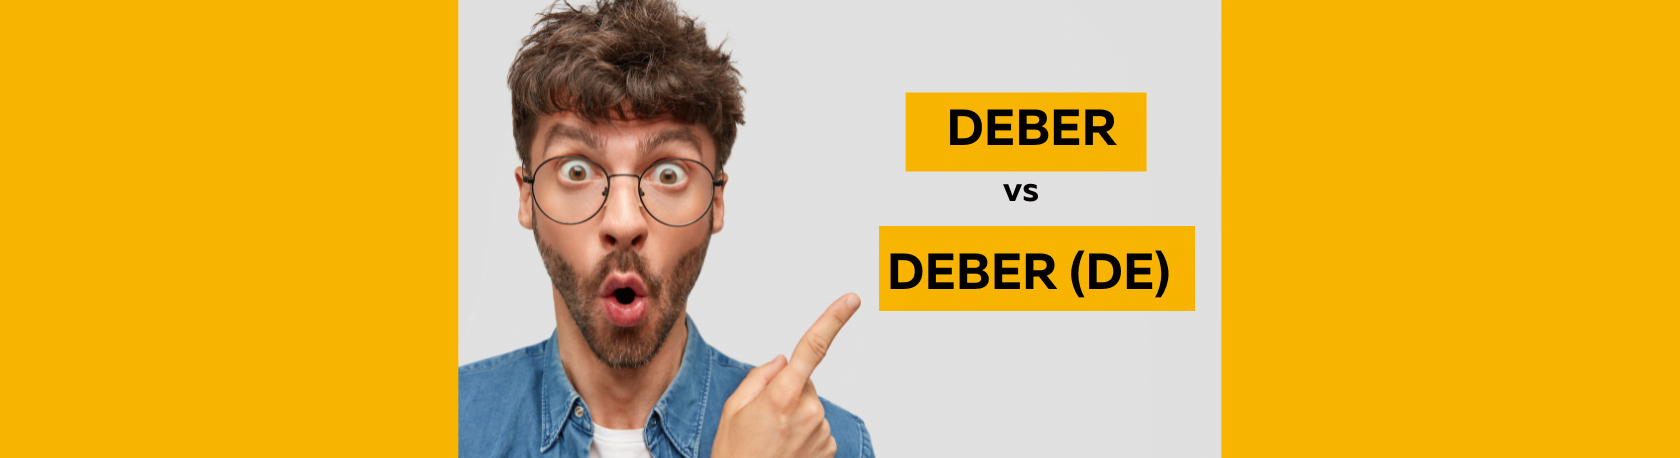 Differences between Deber vs Deber de - Easy Español